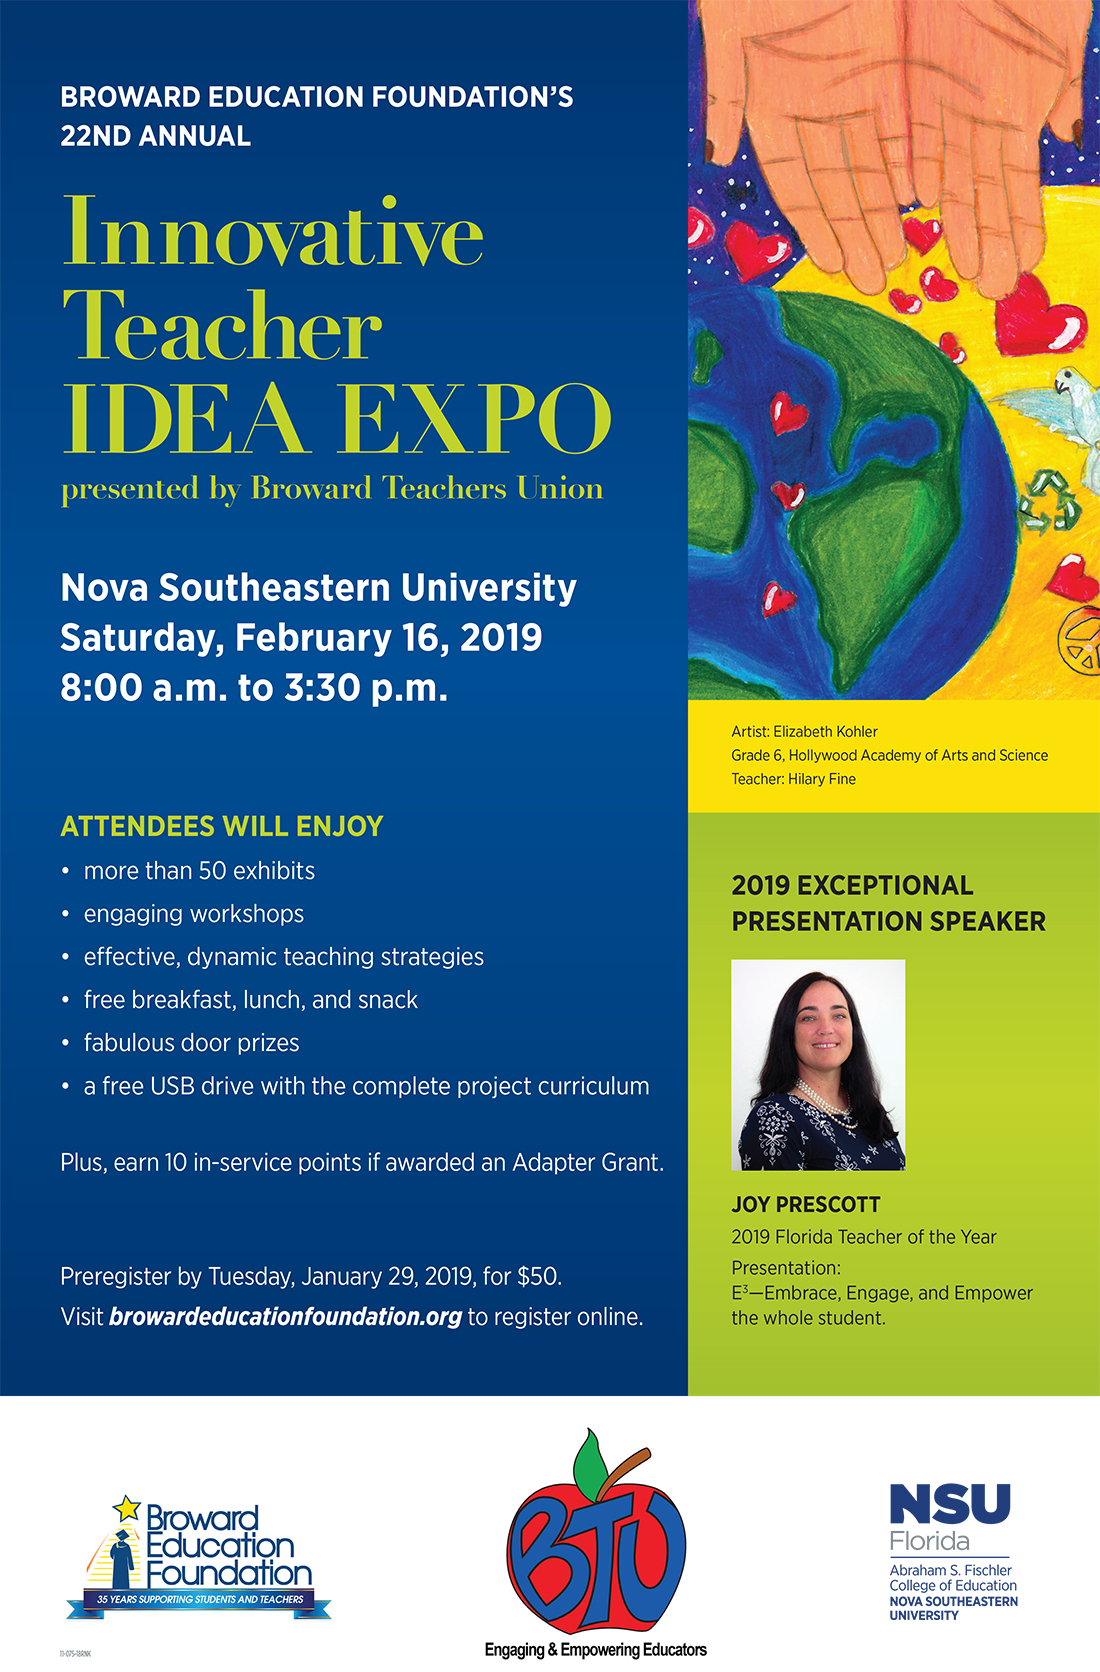 2019 Innovative Teacher Idea Expo presented by Broward Teachers Union